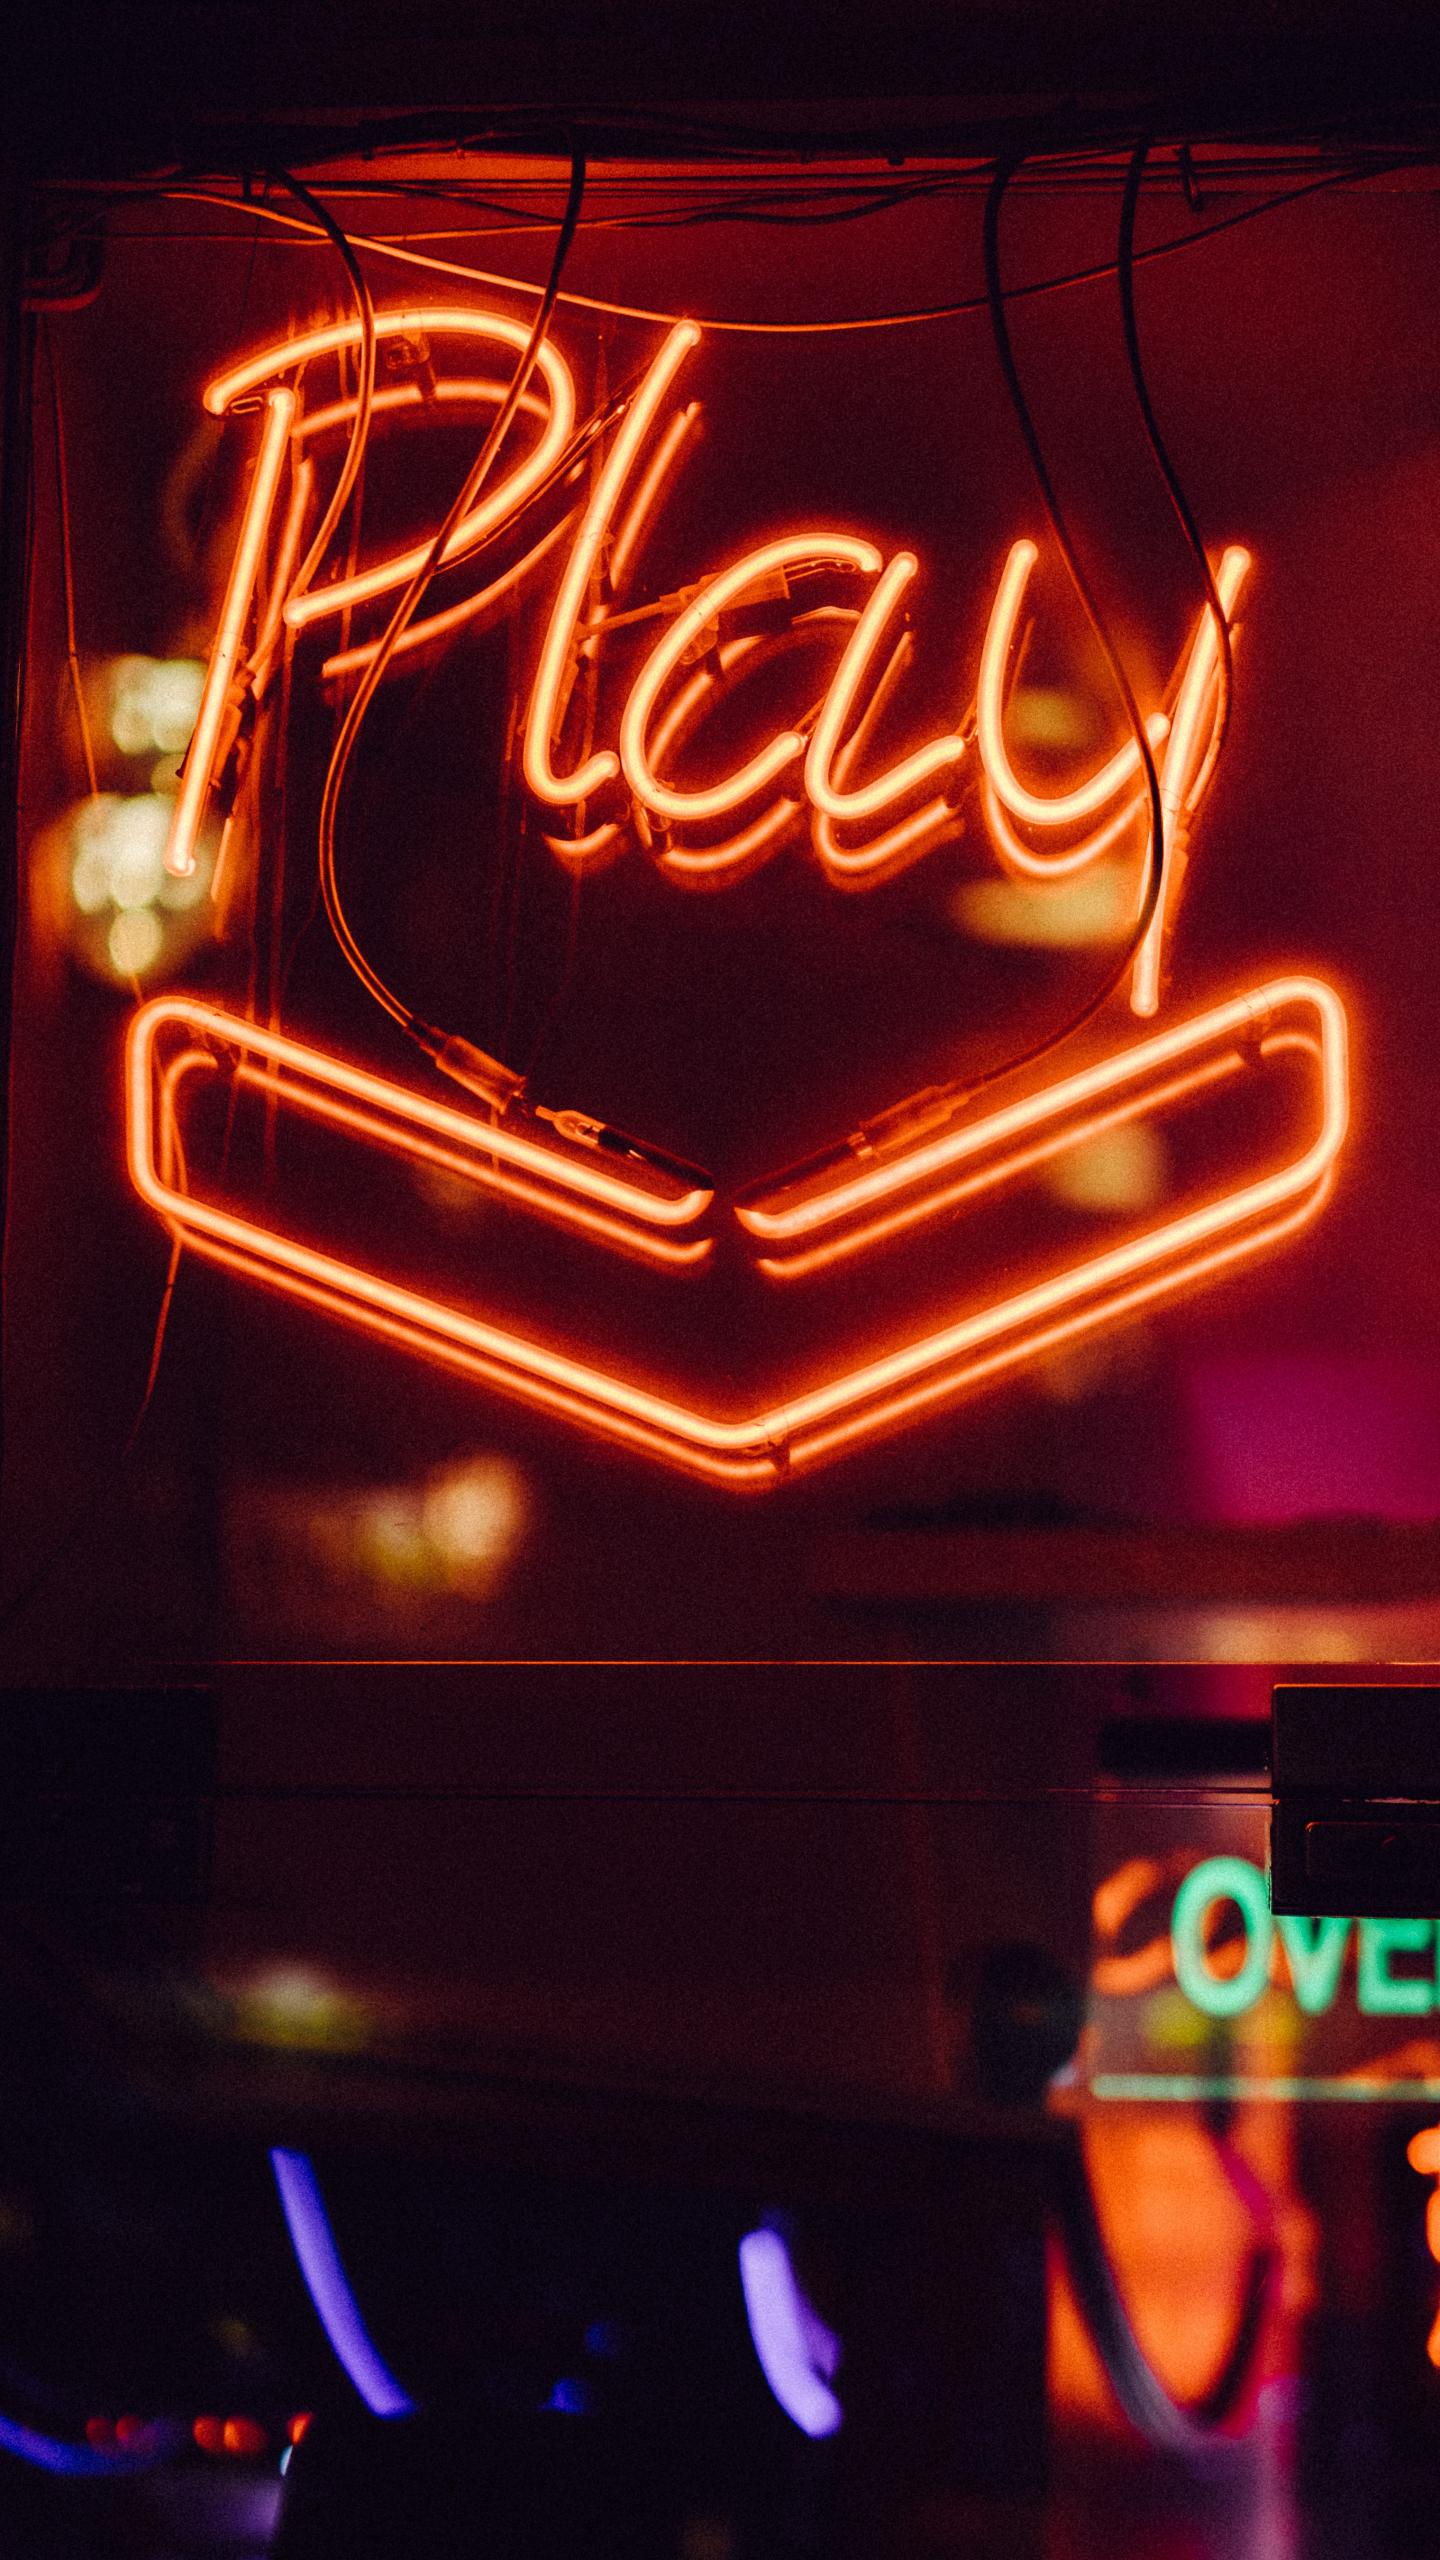 Neonschrift in einem Fenster "Play"